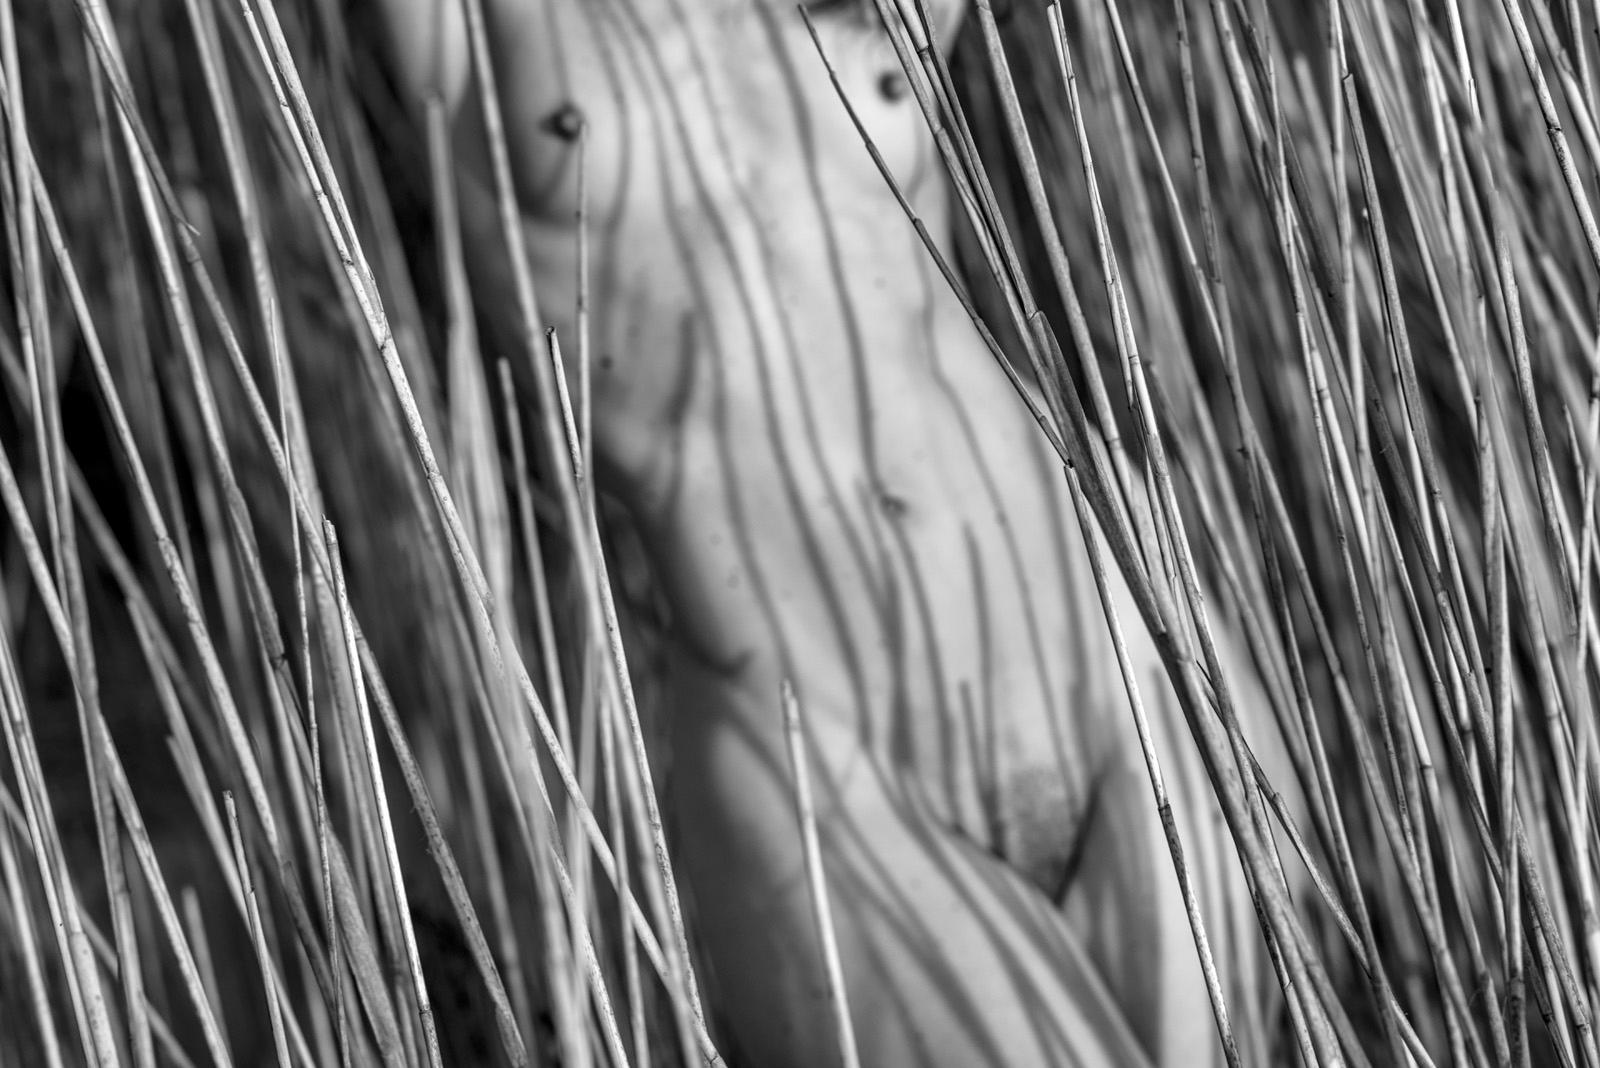 John Mazlish Nude Photograph – „Torso in Reeds“ – Abstrakter Schwarz-Weiß-Akt der bildenden Kunst